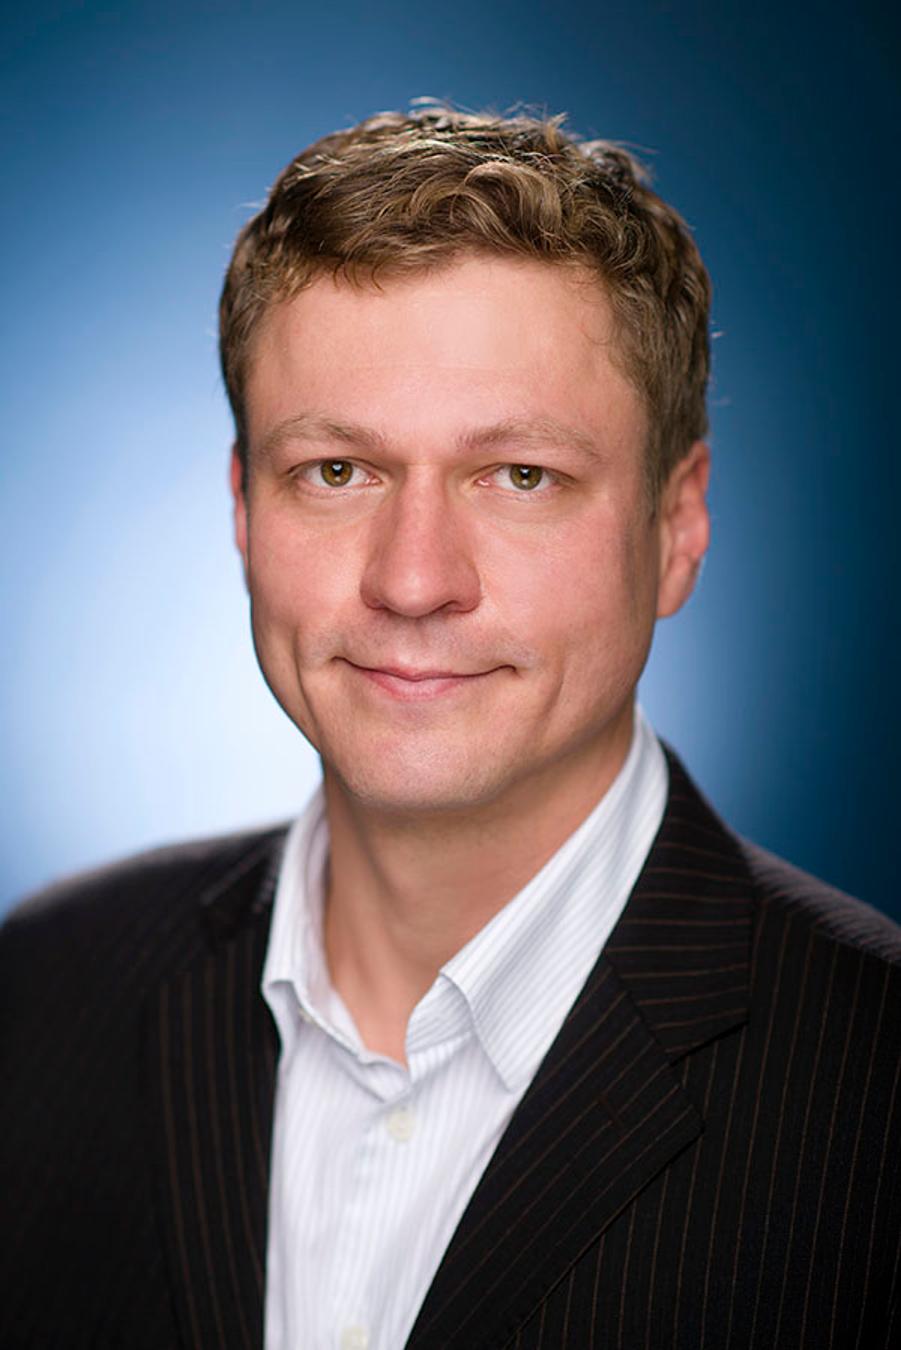 Xpat Interview: Peter Szilagyi, Associate Professor of Finance at CEU Business School